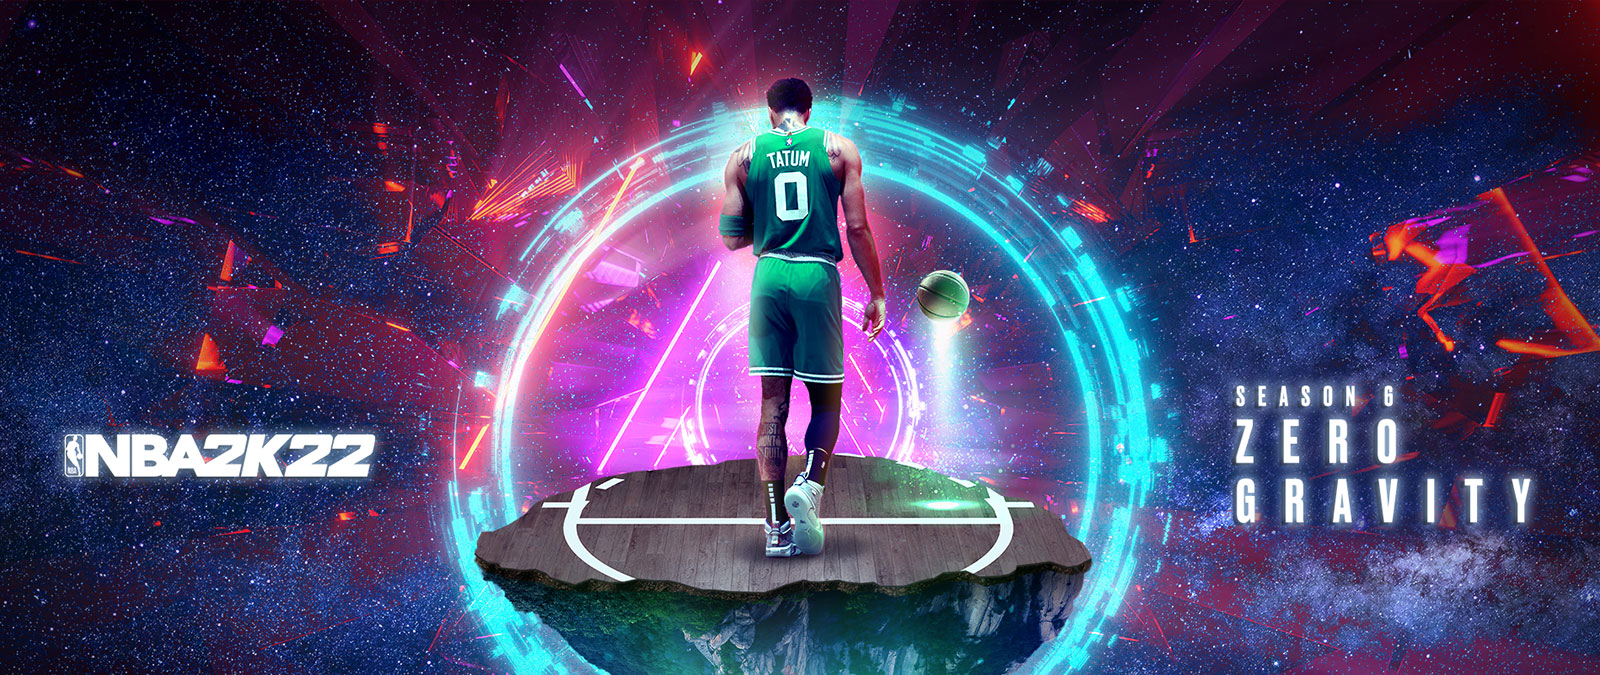 NBA 2K22, Сезон 6 Zero Gravity, Тейтум стоит на баскетбольной площадке, парящей в космосе, окруженный кольцами энергии.